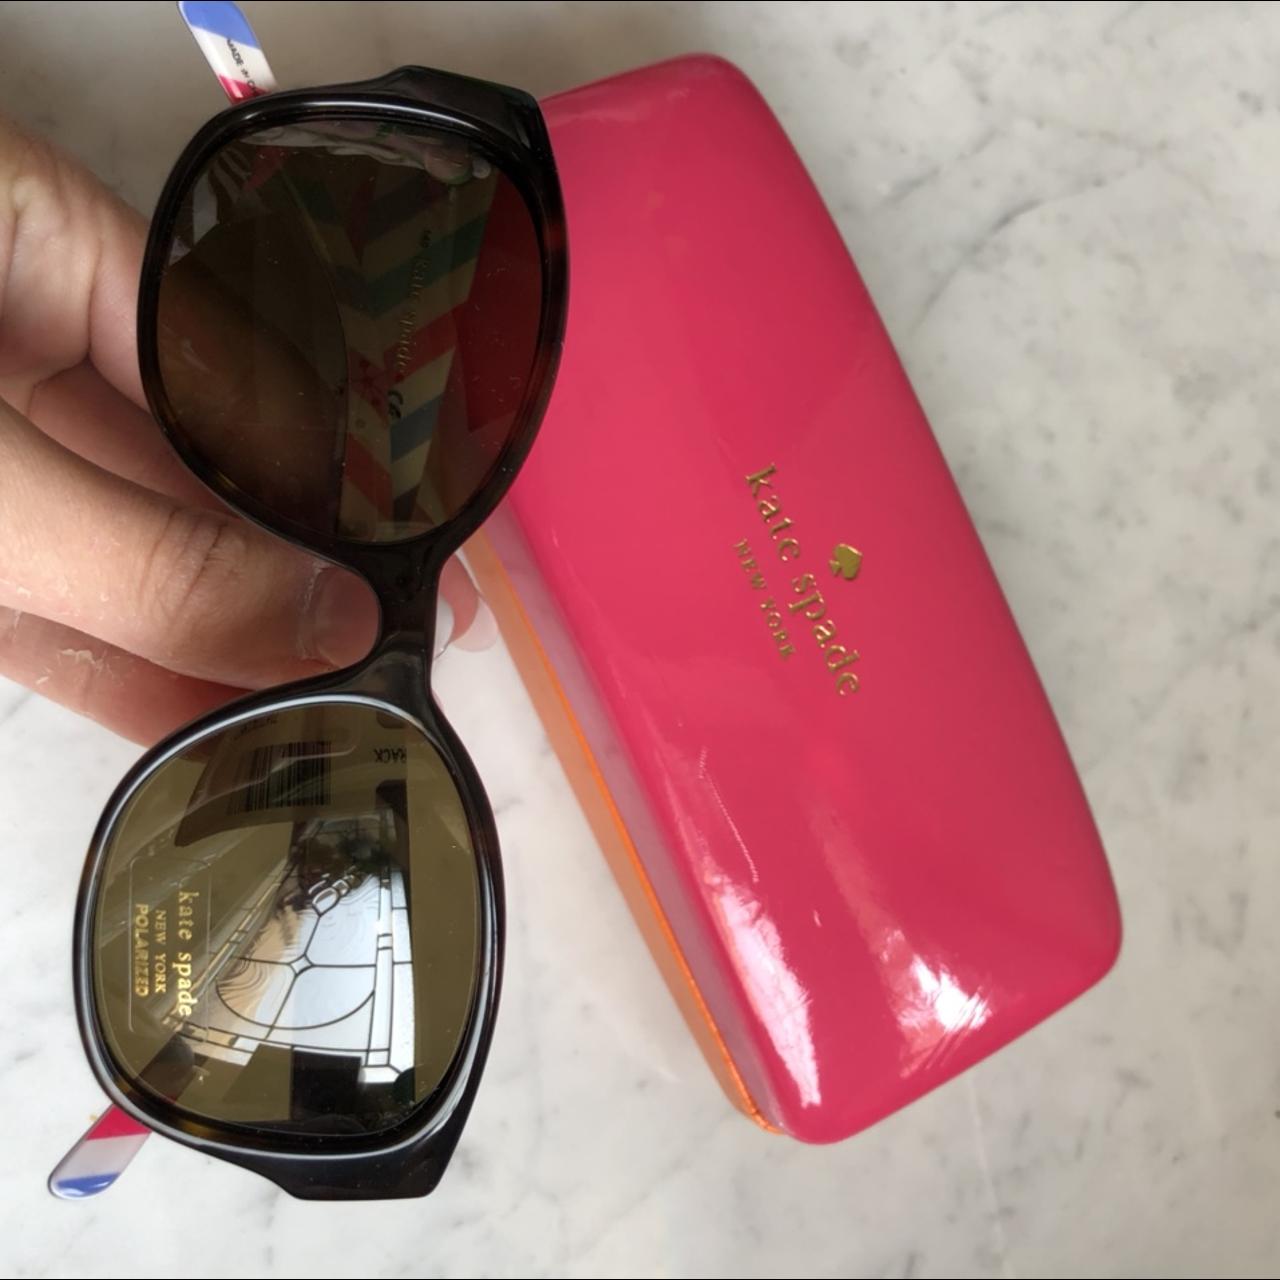 Kate Spade Sunglass Eyeglass Case Dimensions: 6.5 x - Depop